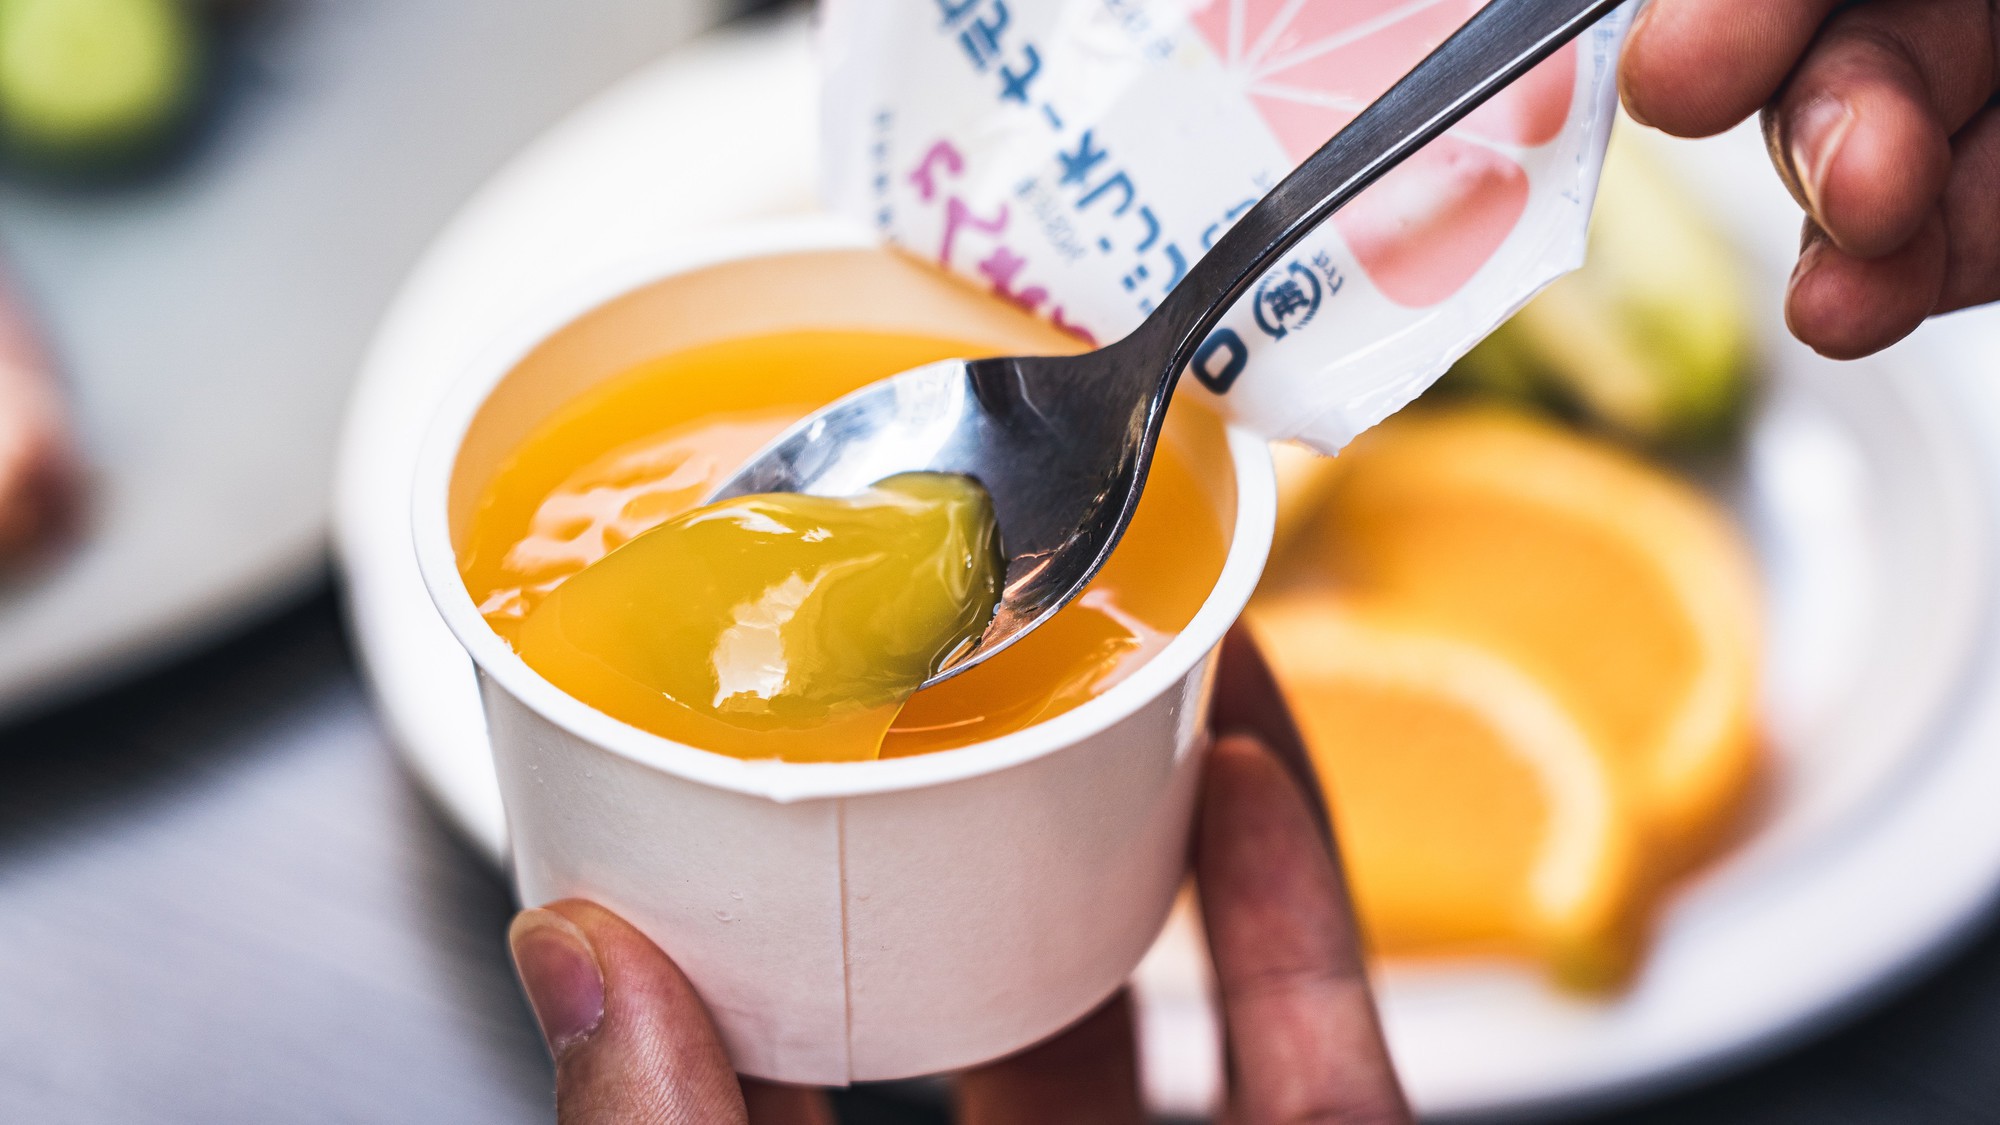 神戸市の学校給食に出ていたデザート「とくれん」のオレンジゼリーを朝食ブッフェにてご用意